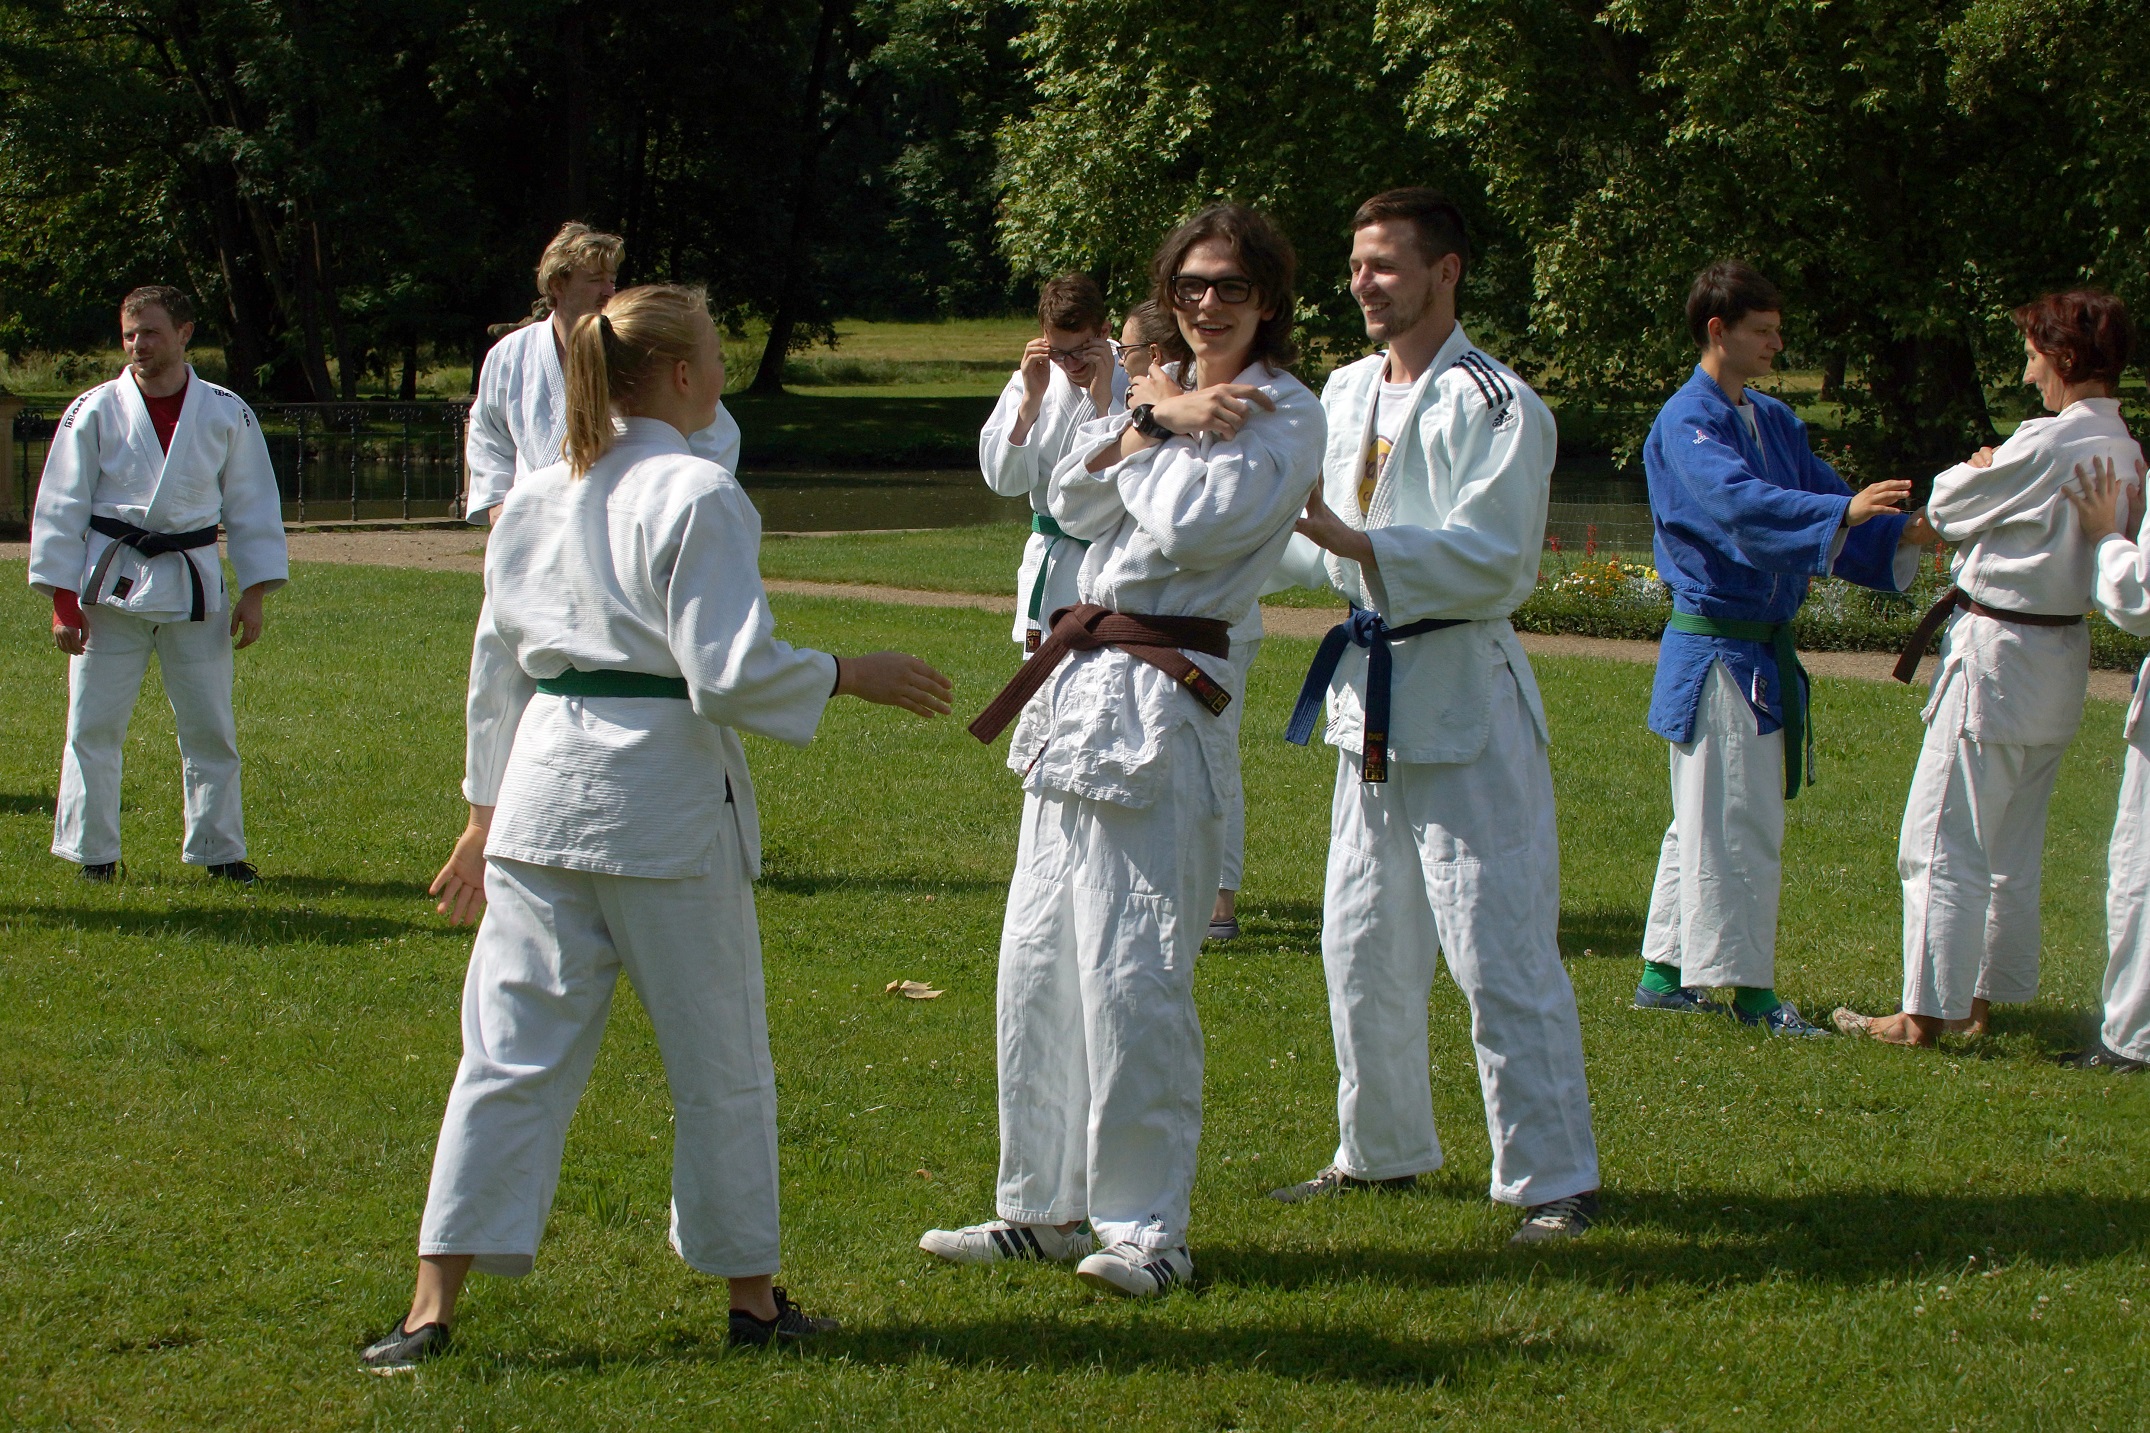 Bild: Mehrere Judokas, im Judoanzug stehen auf einer Wiese im Schlosspark. Mehrere dreier Teams führen eine Übung aus bei der, ein Judoka zwischen zwei anderen Judokas steht.